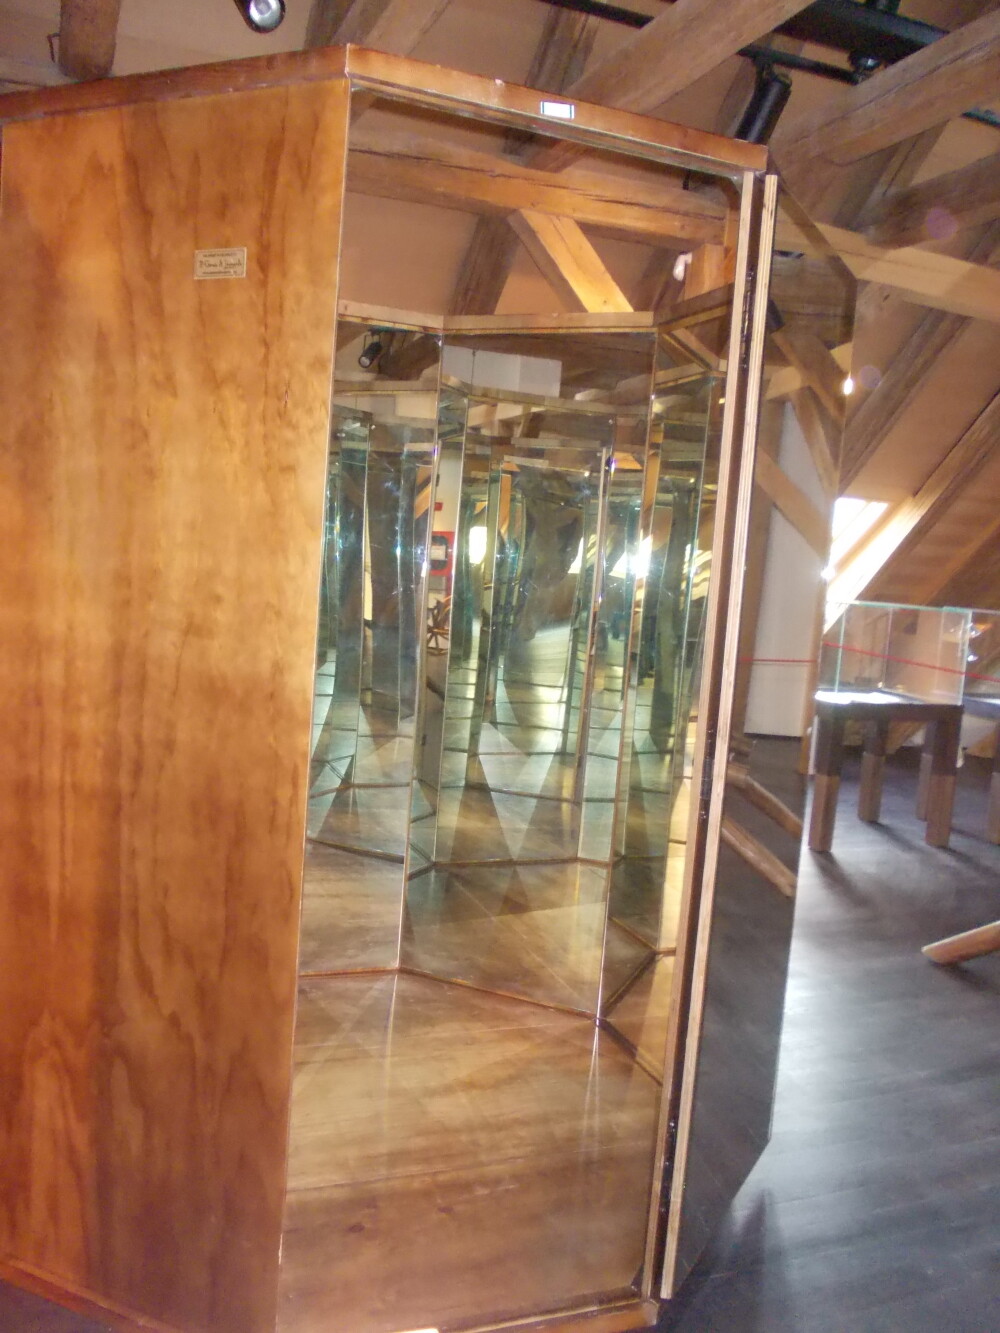 Afla cum poti ajunge in camera oglinzilor, unde da Vinci a studiat secretele reflexiei multiple - Imaginea 1